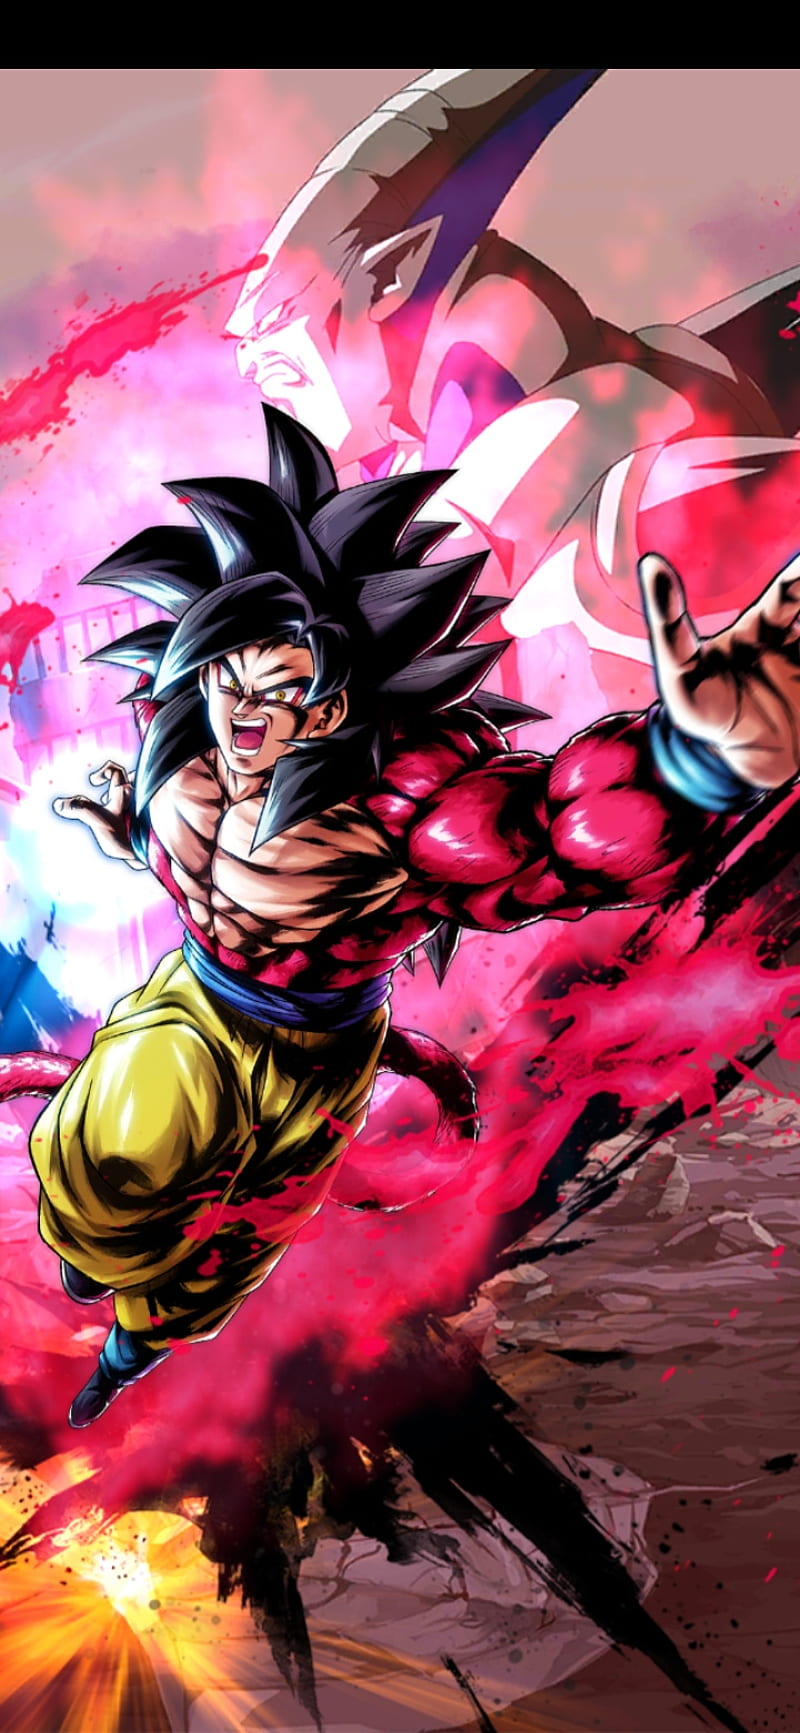 Goku Super Saiyan 4 4K wallpaper download